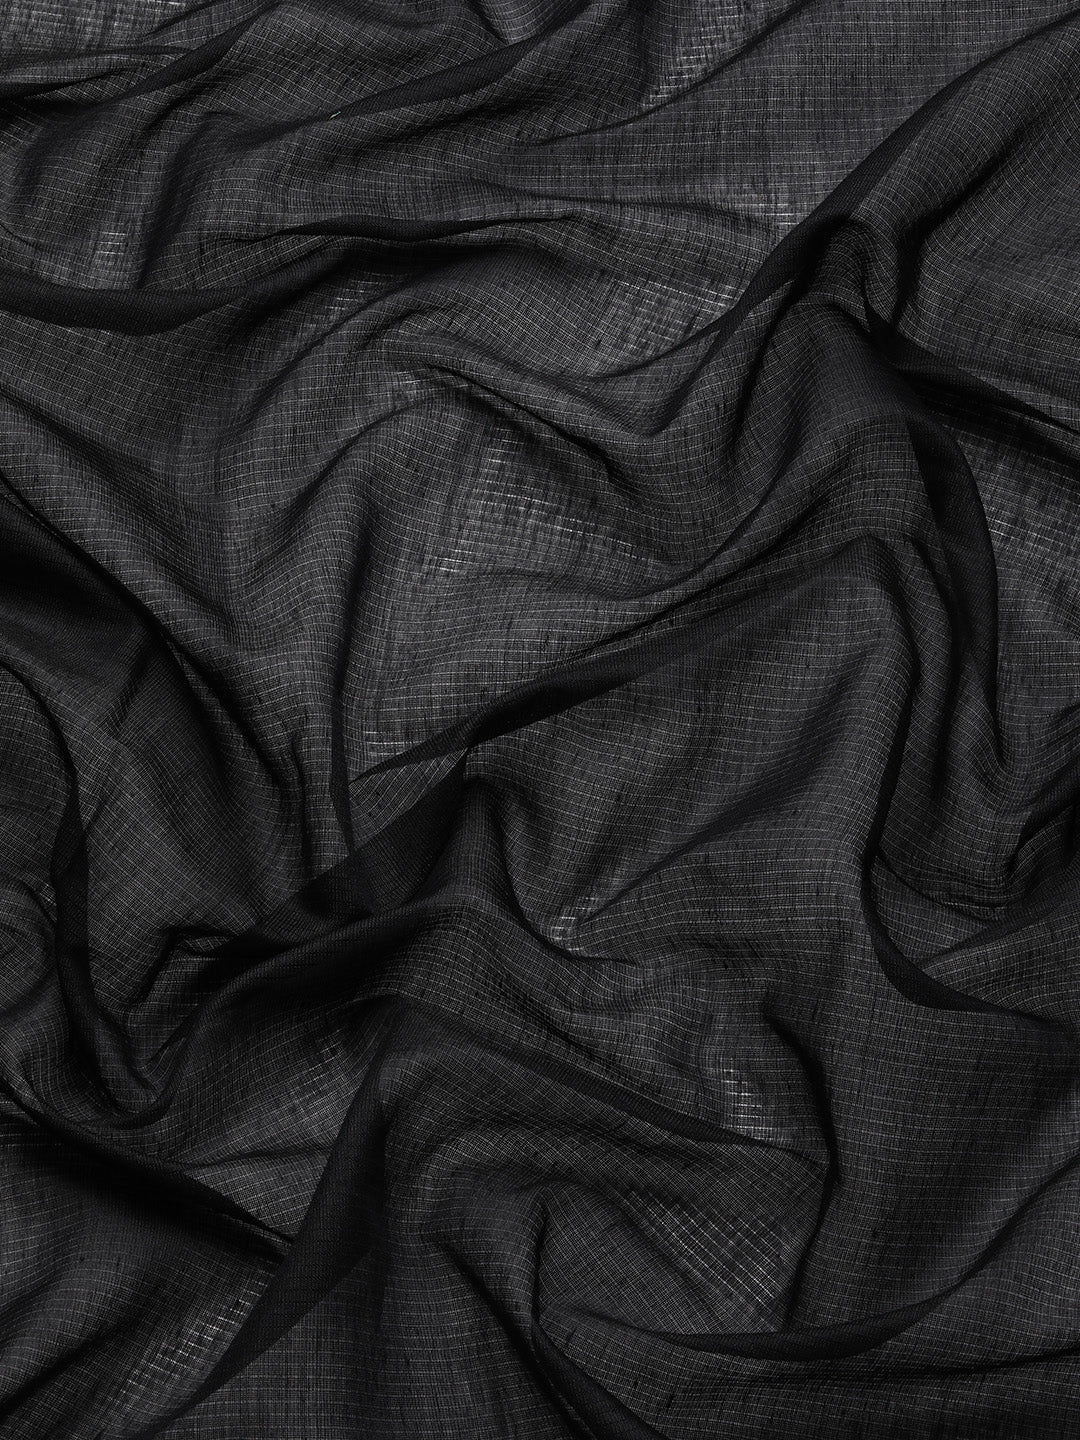 Designer Black Cotton Saree